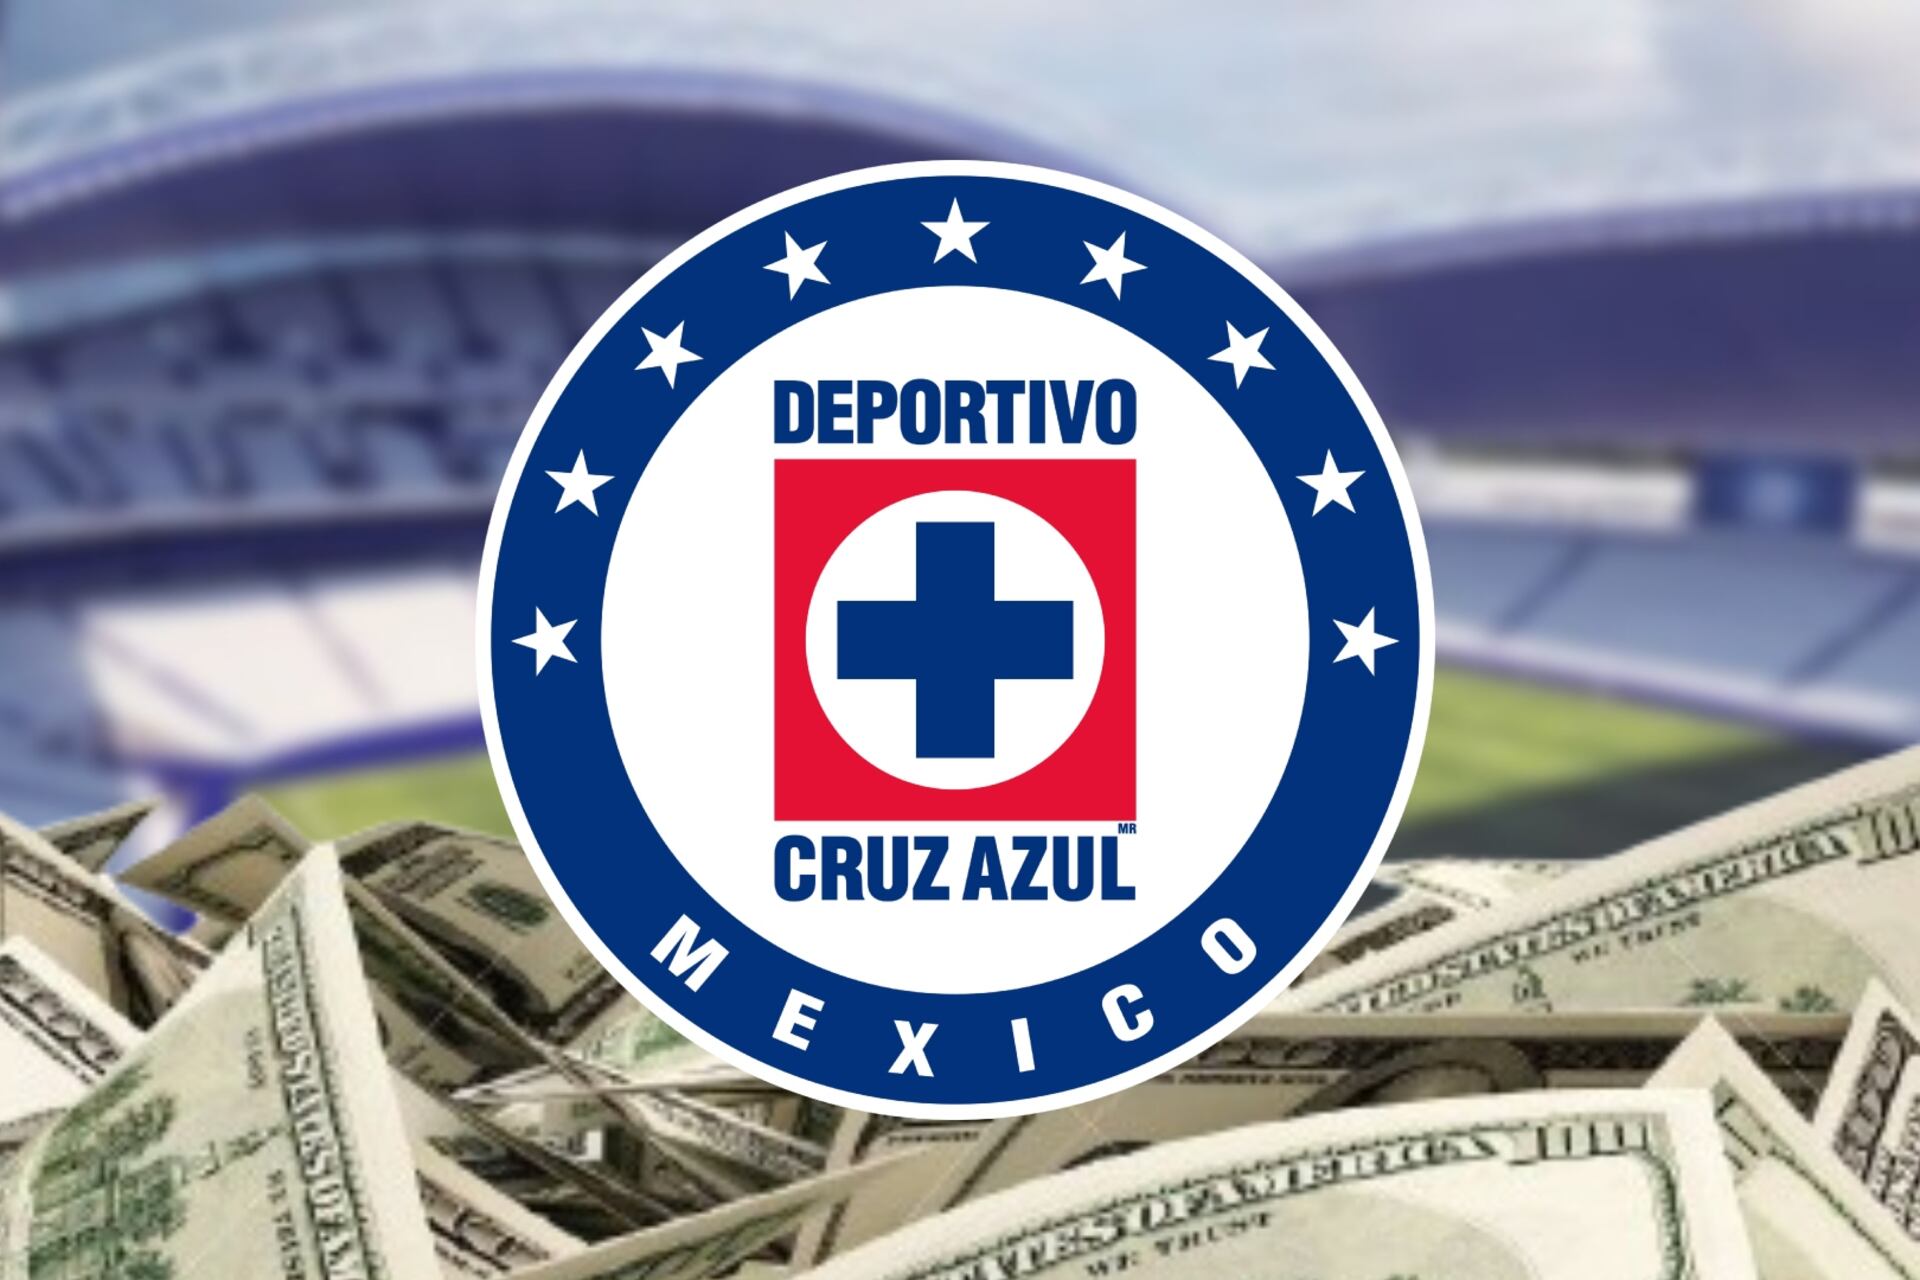 Revelado el costo que tendría el nuevo estadio de Cruz Azul ¡El 2do más caro de Latinoamérica!